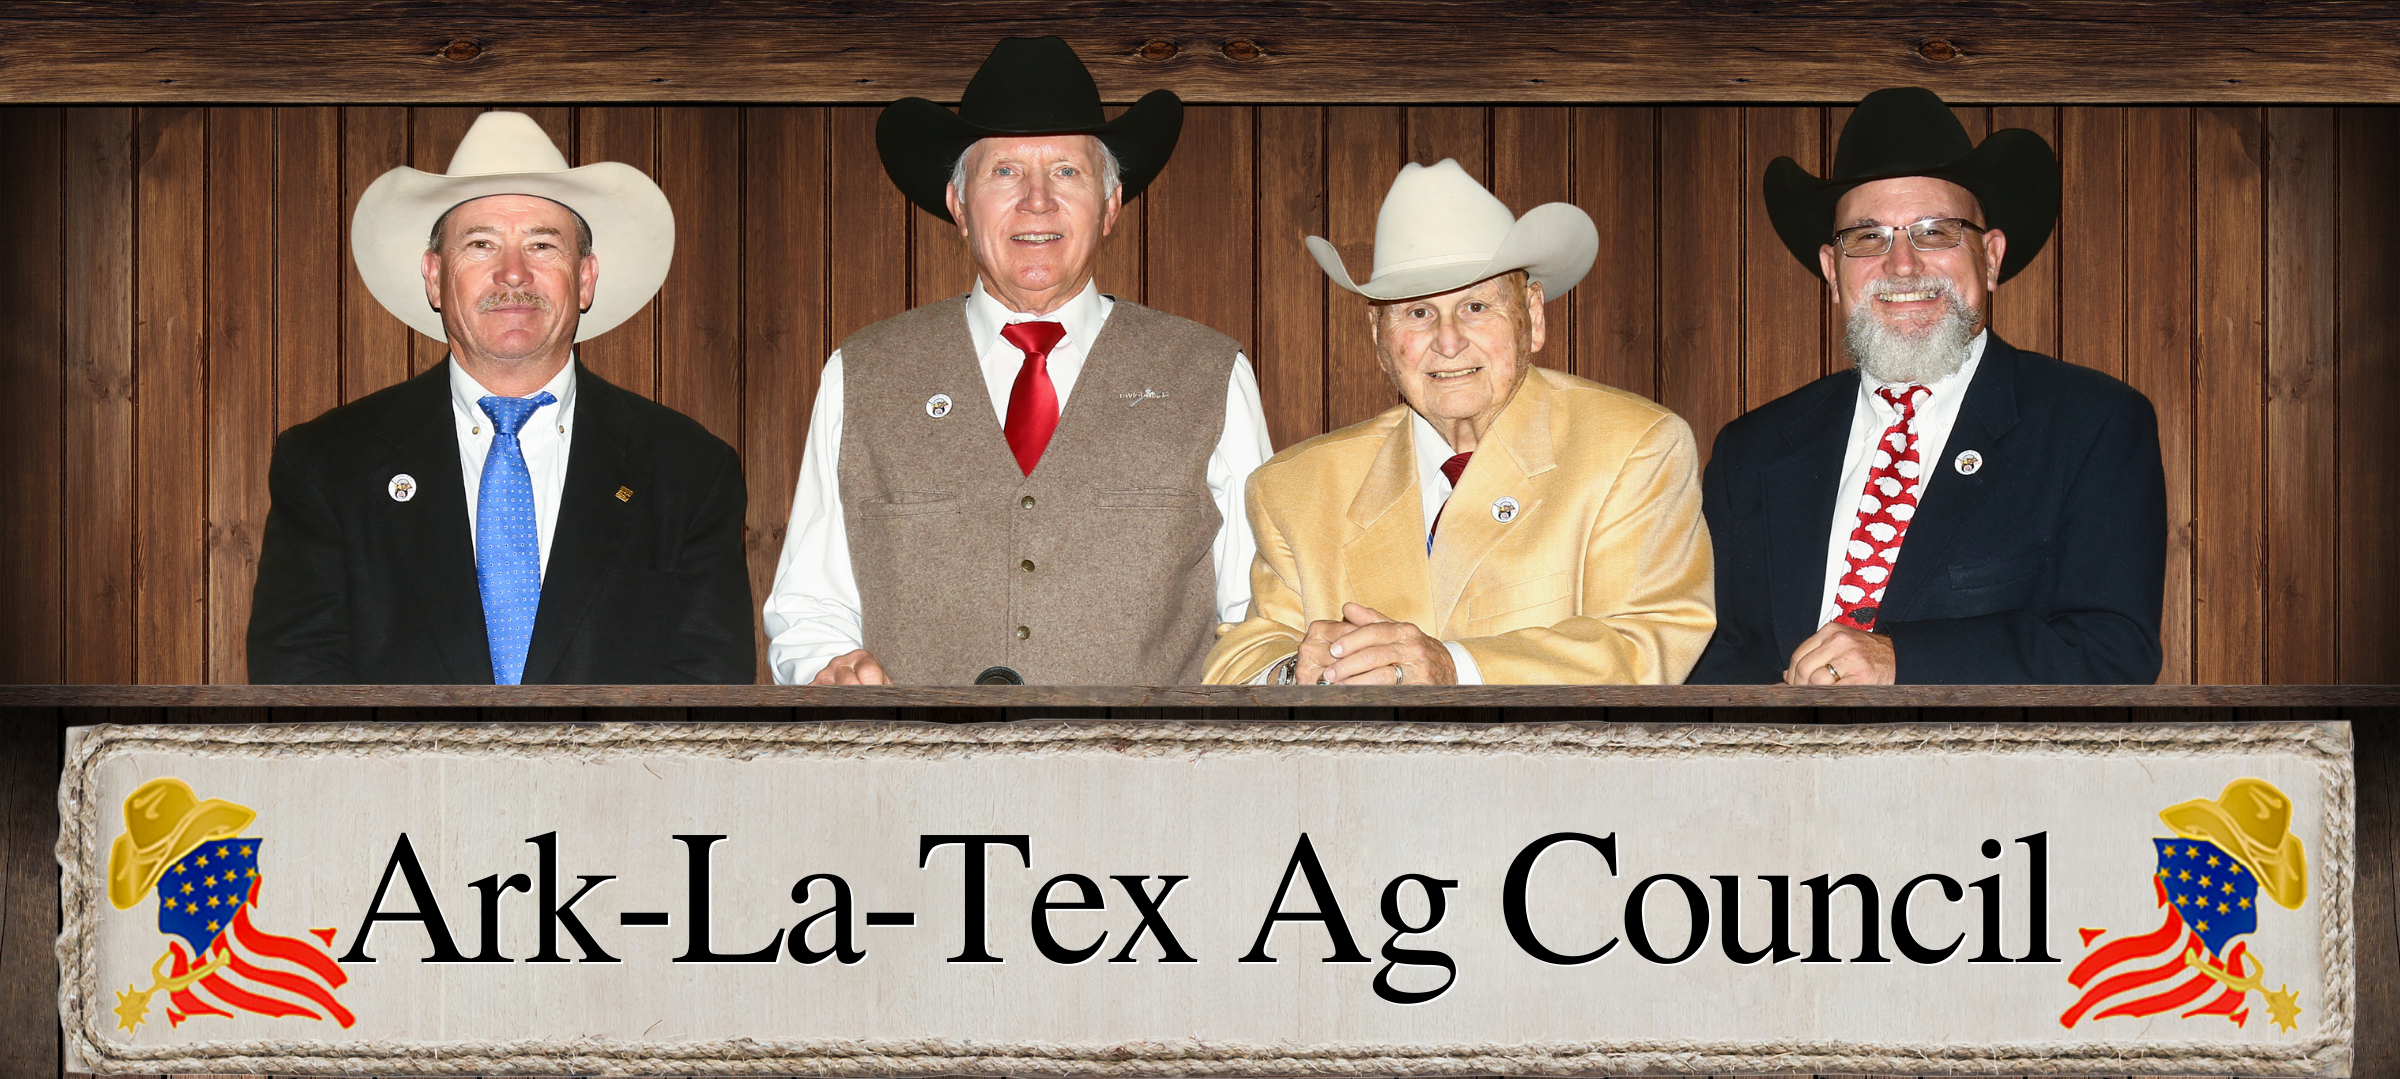 Ark-La-Tex Agricultural Council